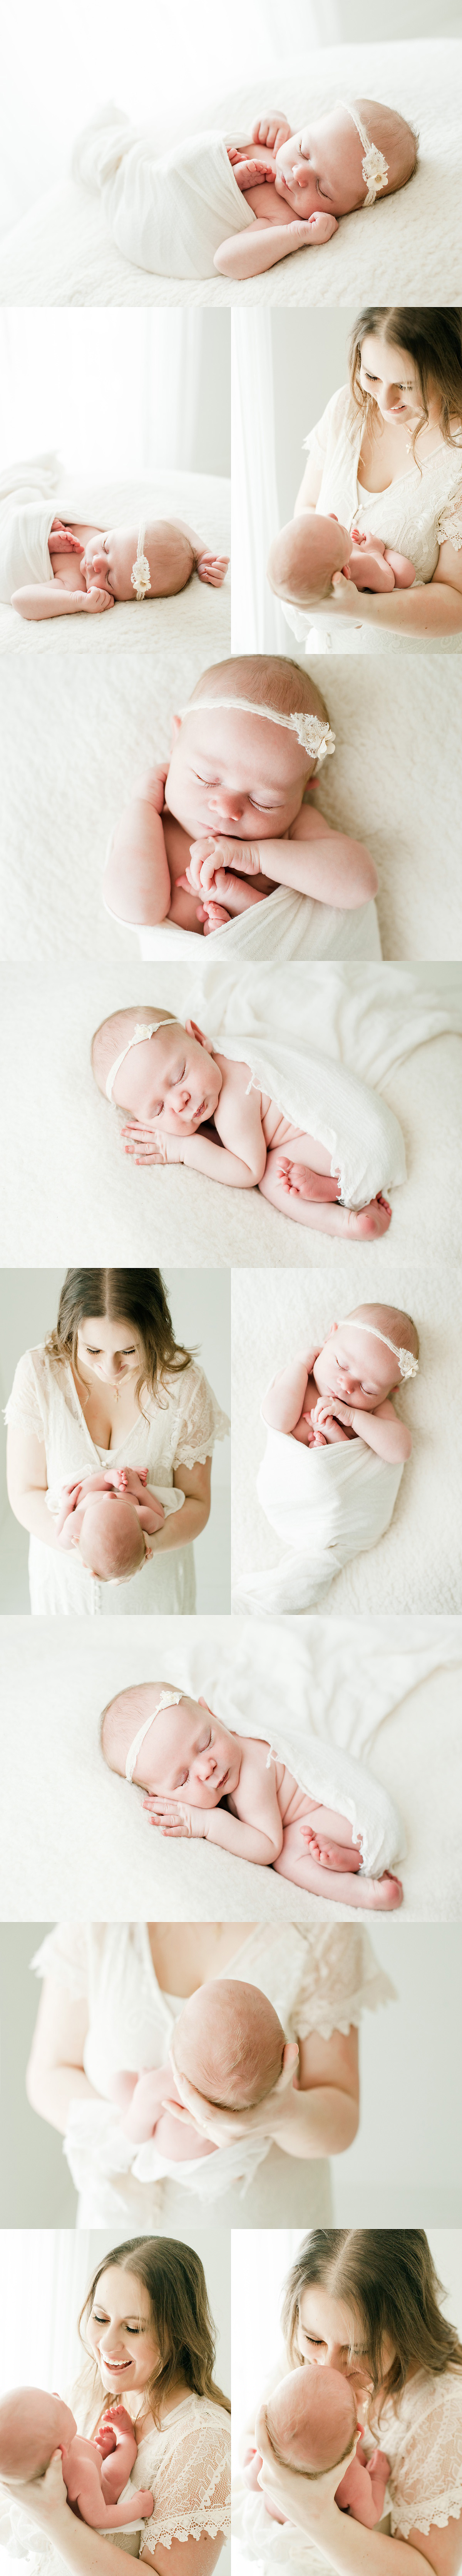 newborn baby girl snuggled up on white